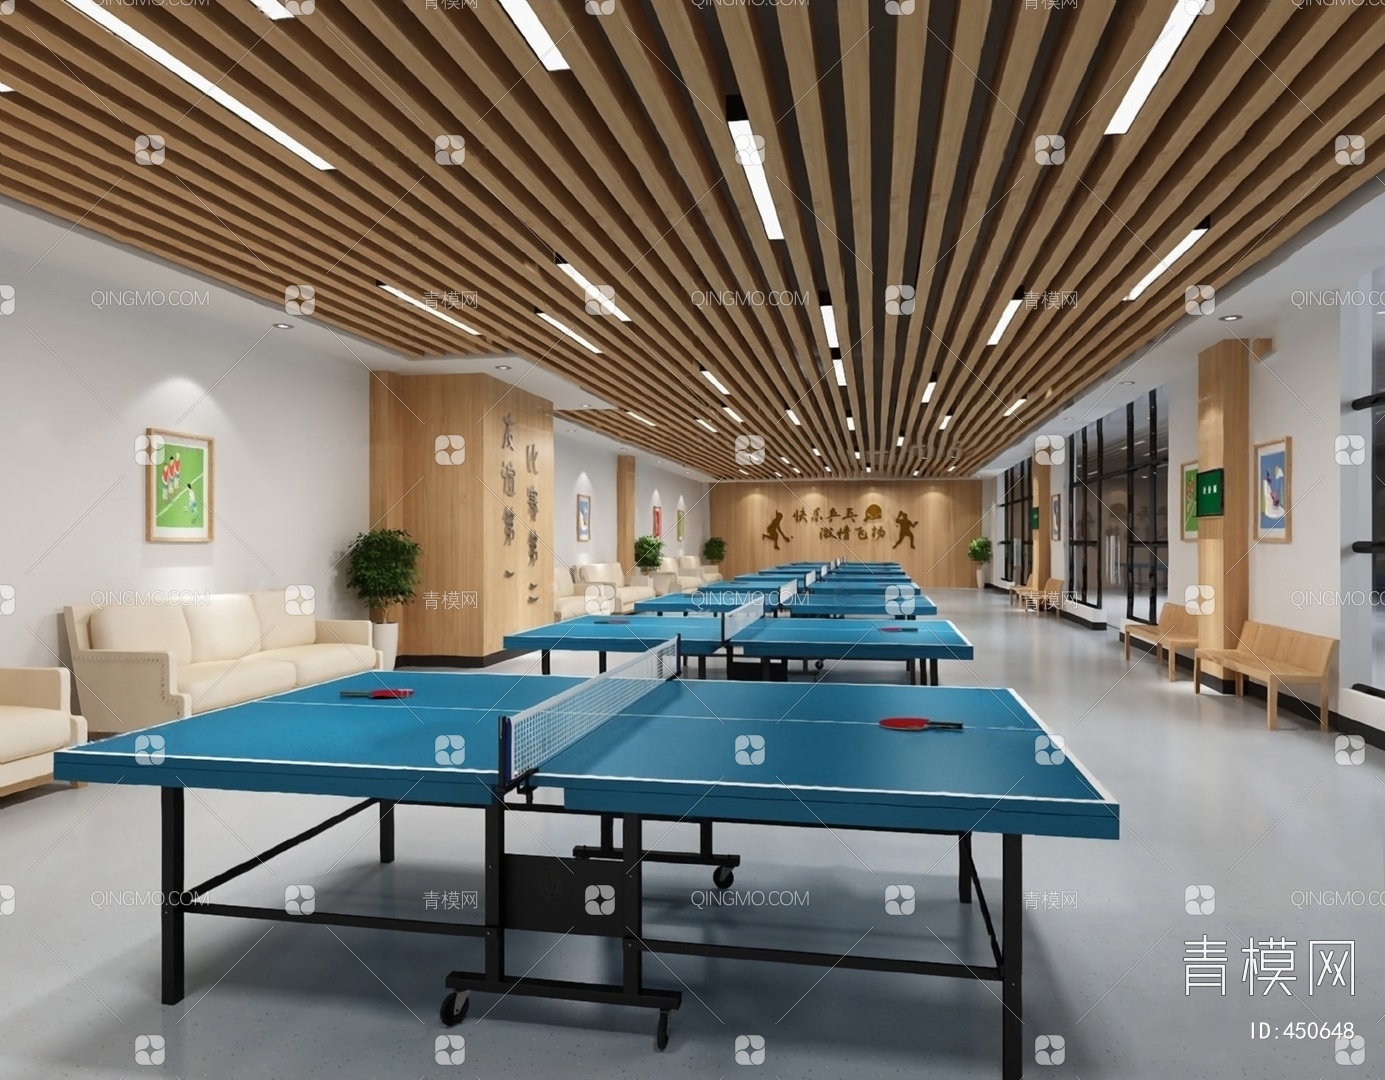 现代乒乓球场 - 效果图欣赏 - 多模网